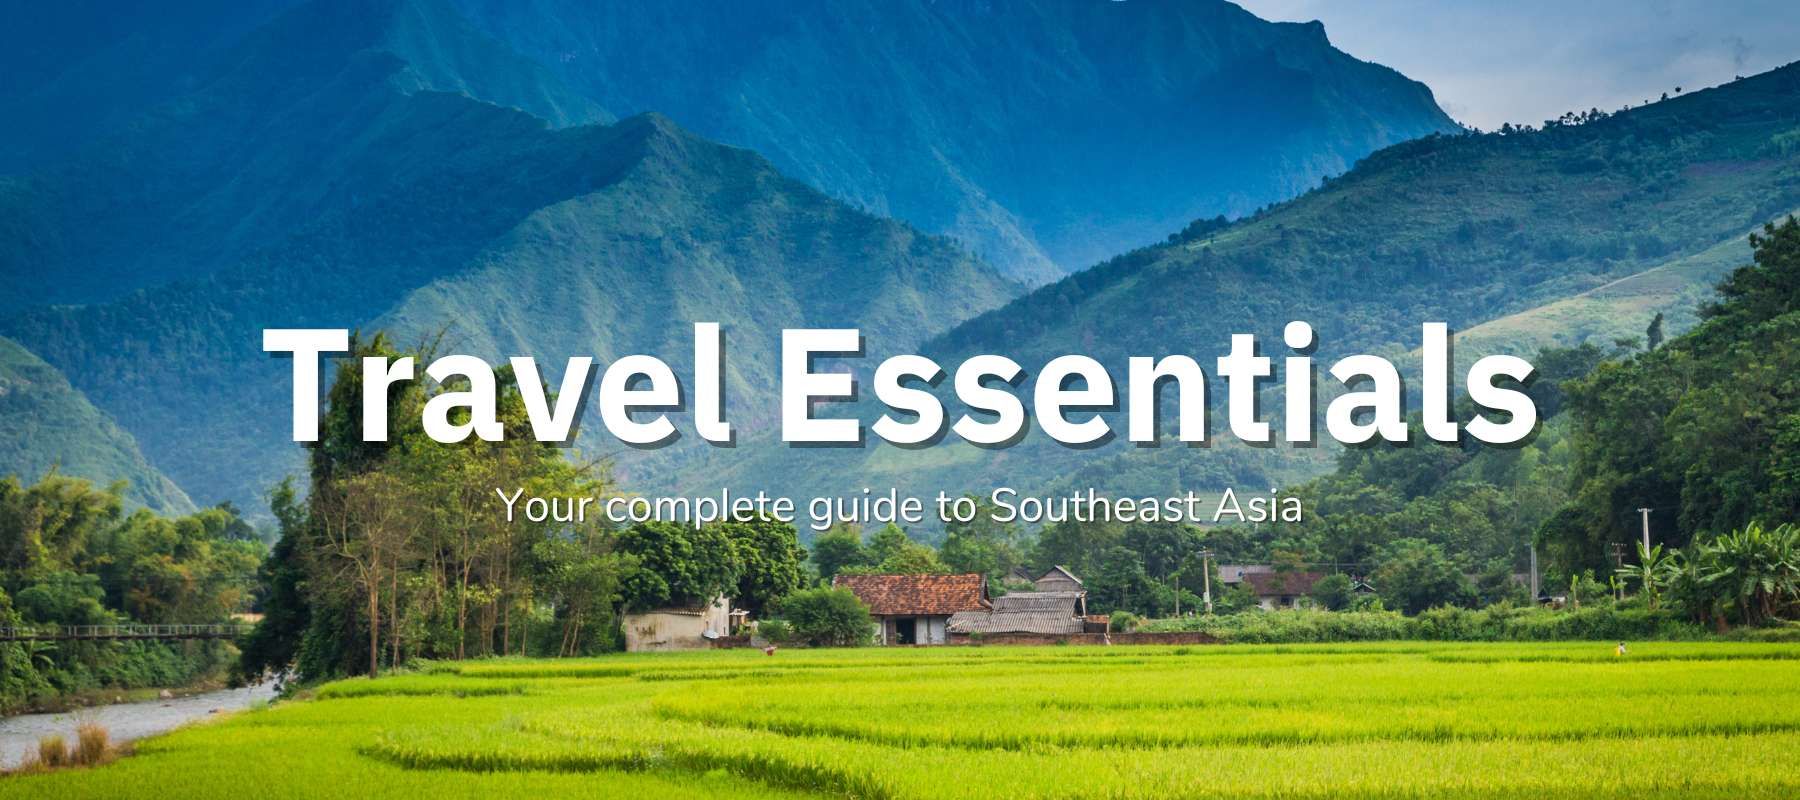 Travel Essentials by MakeYourAsia